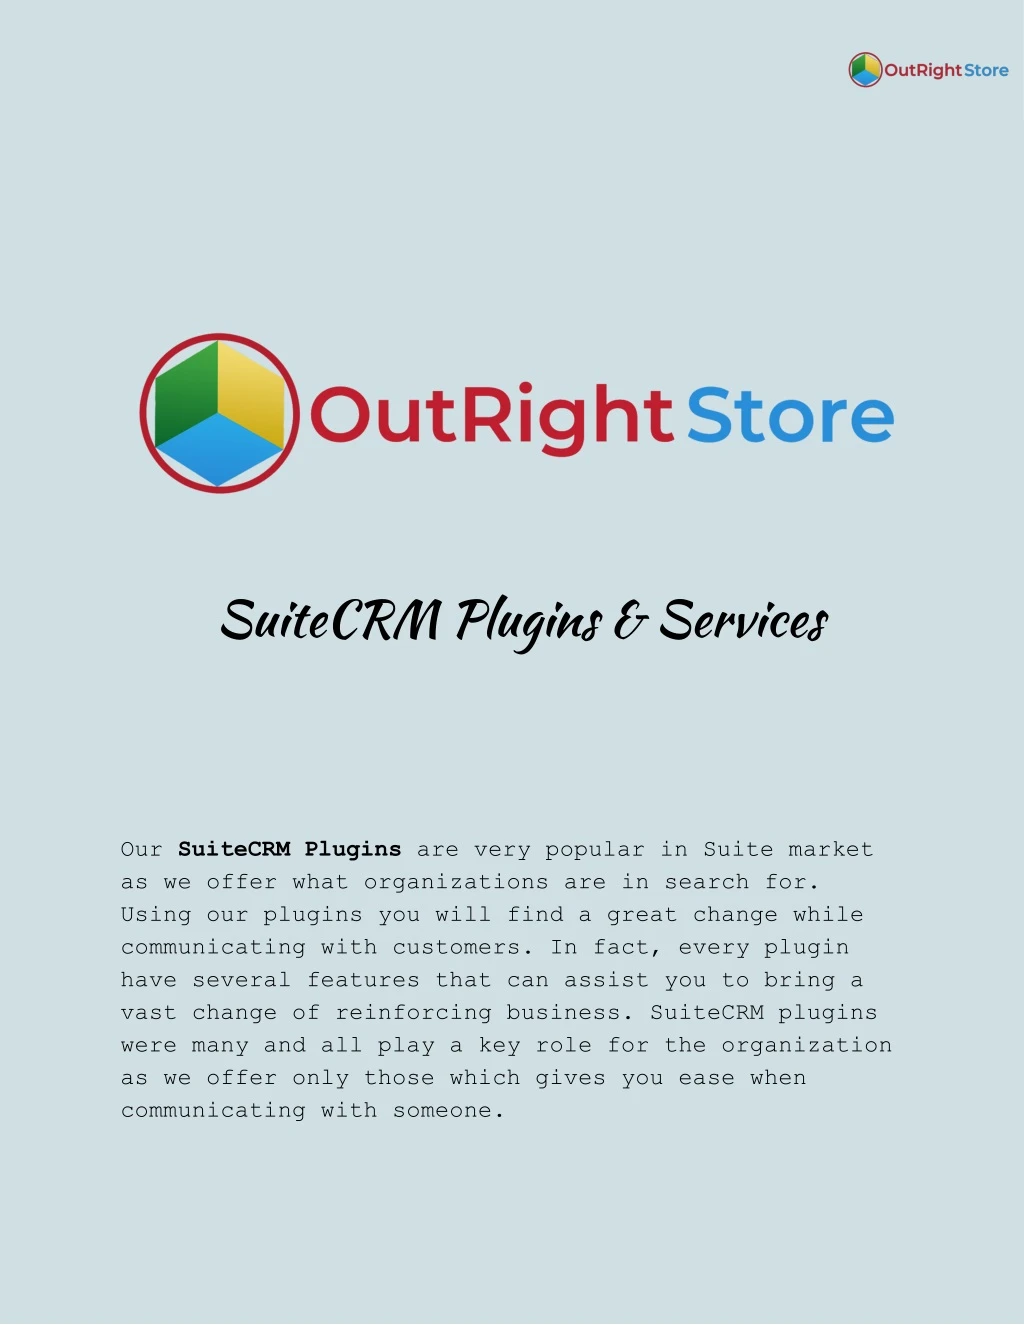 suitecrm plugins services our suitecrm plugins